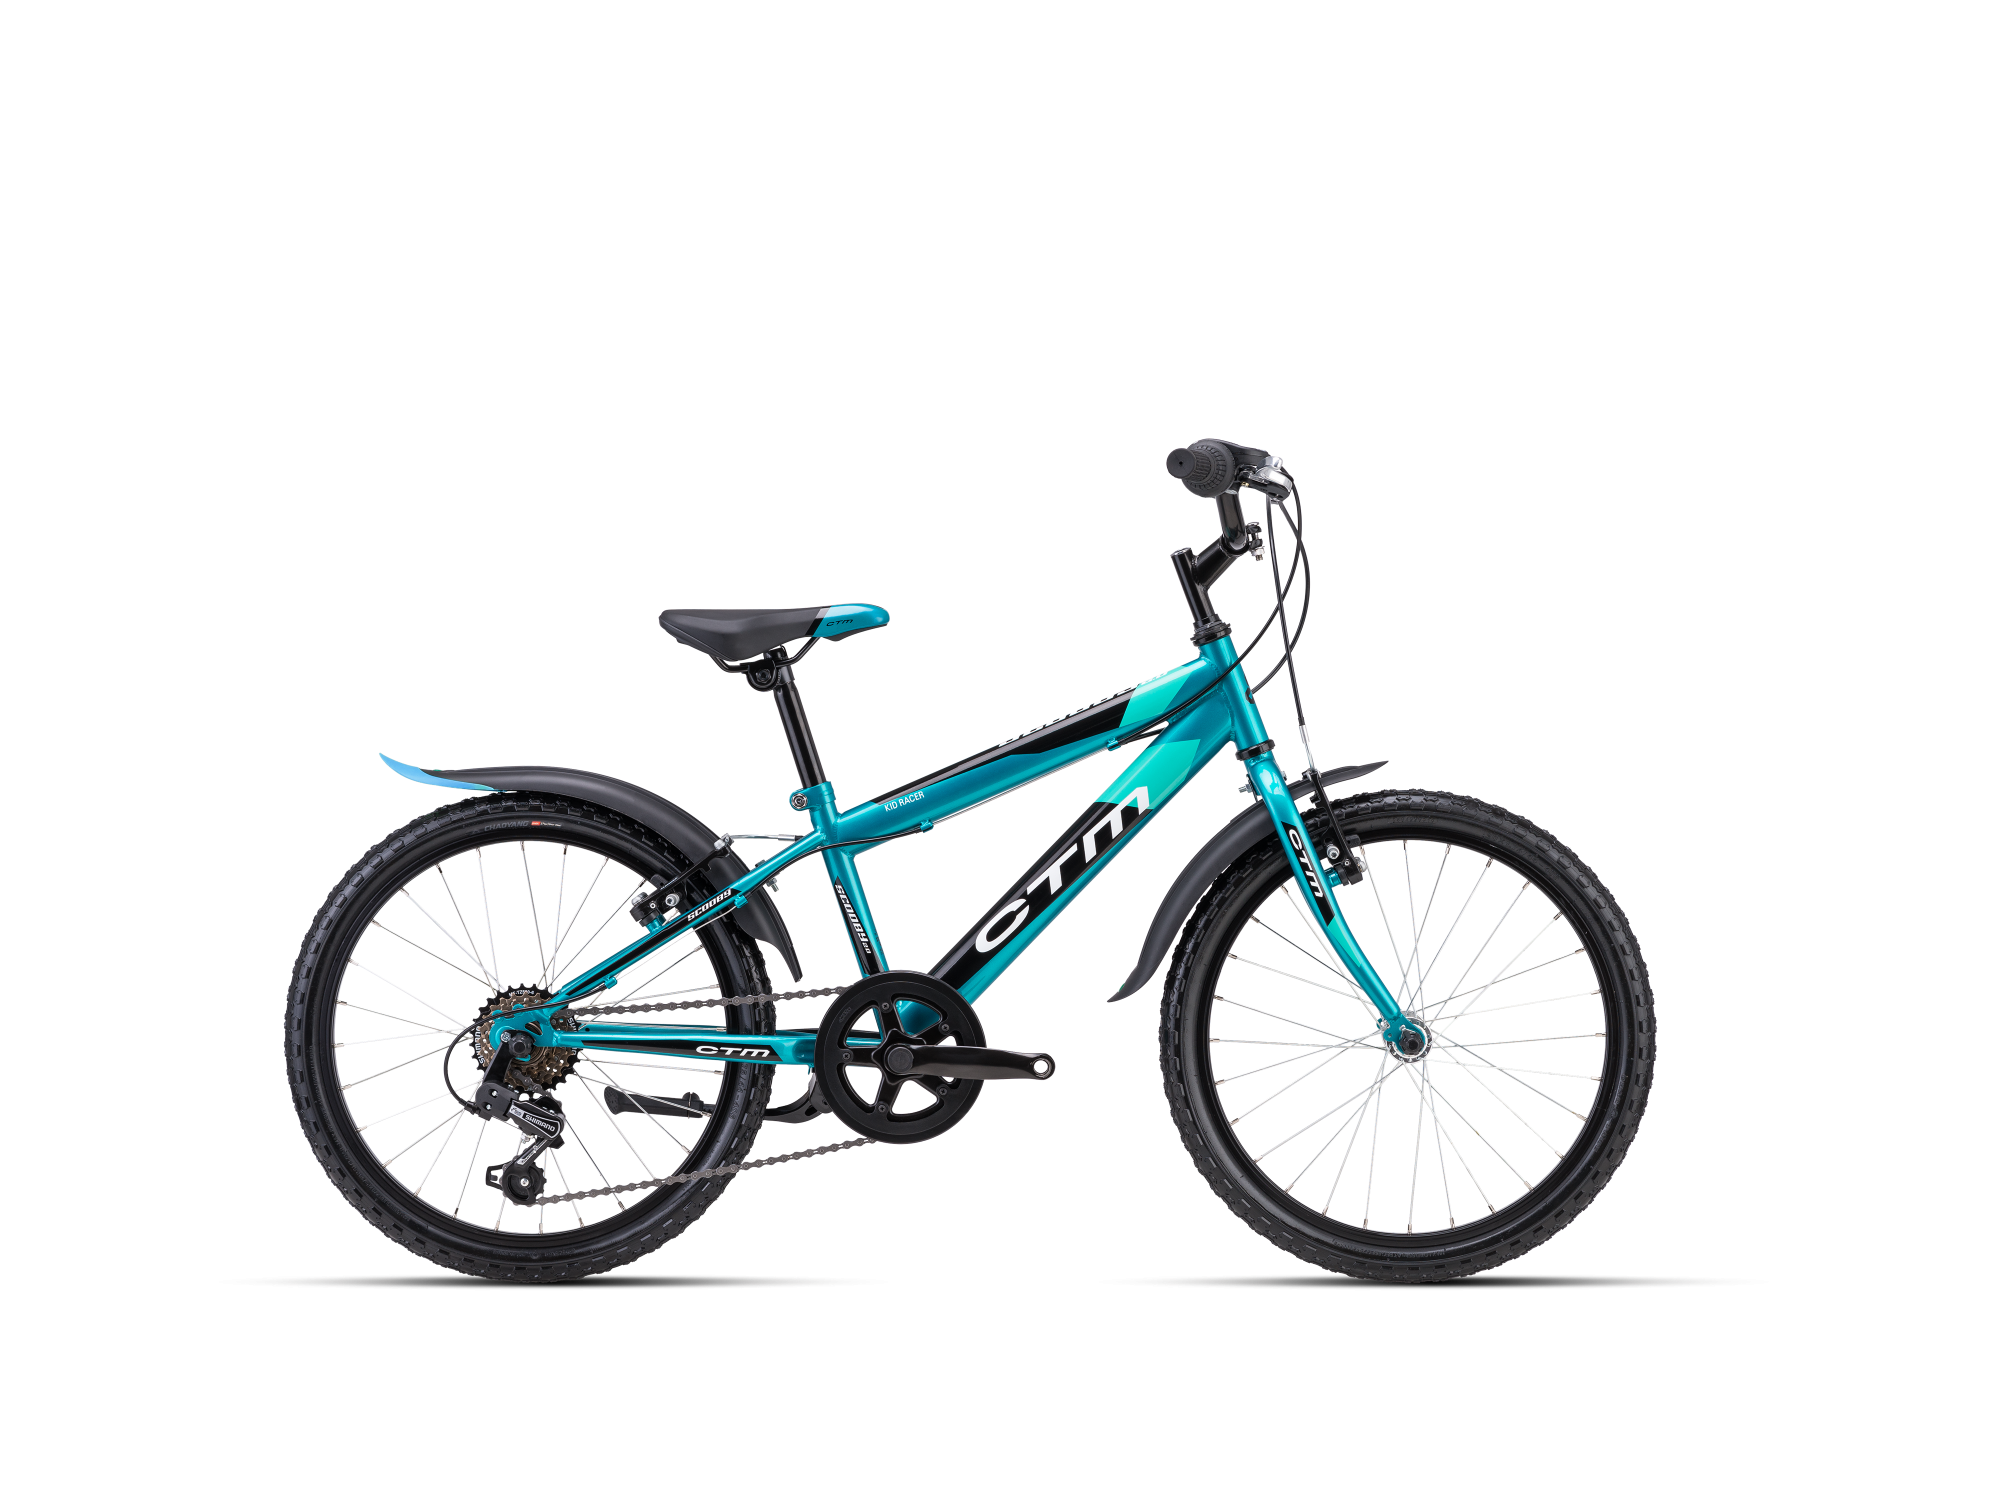 Детский двухколесный велосипед CTM Scooby 2.0 turquoise 20 дюймов